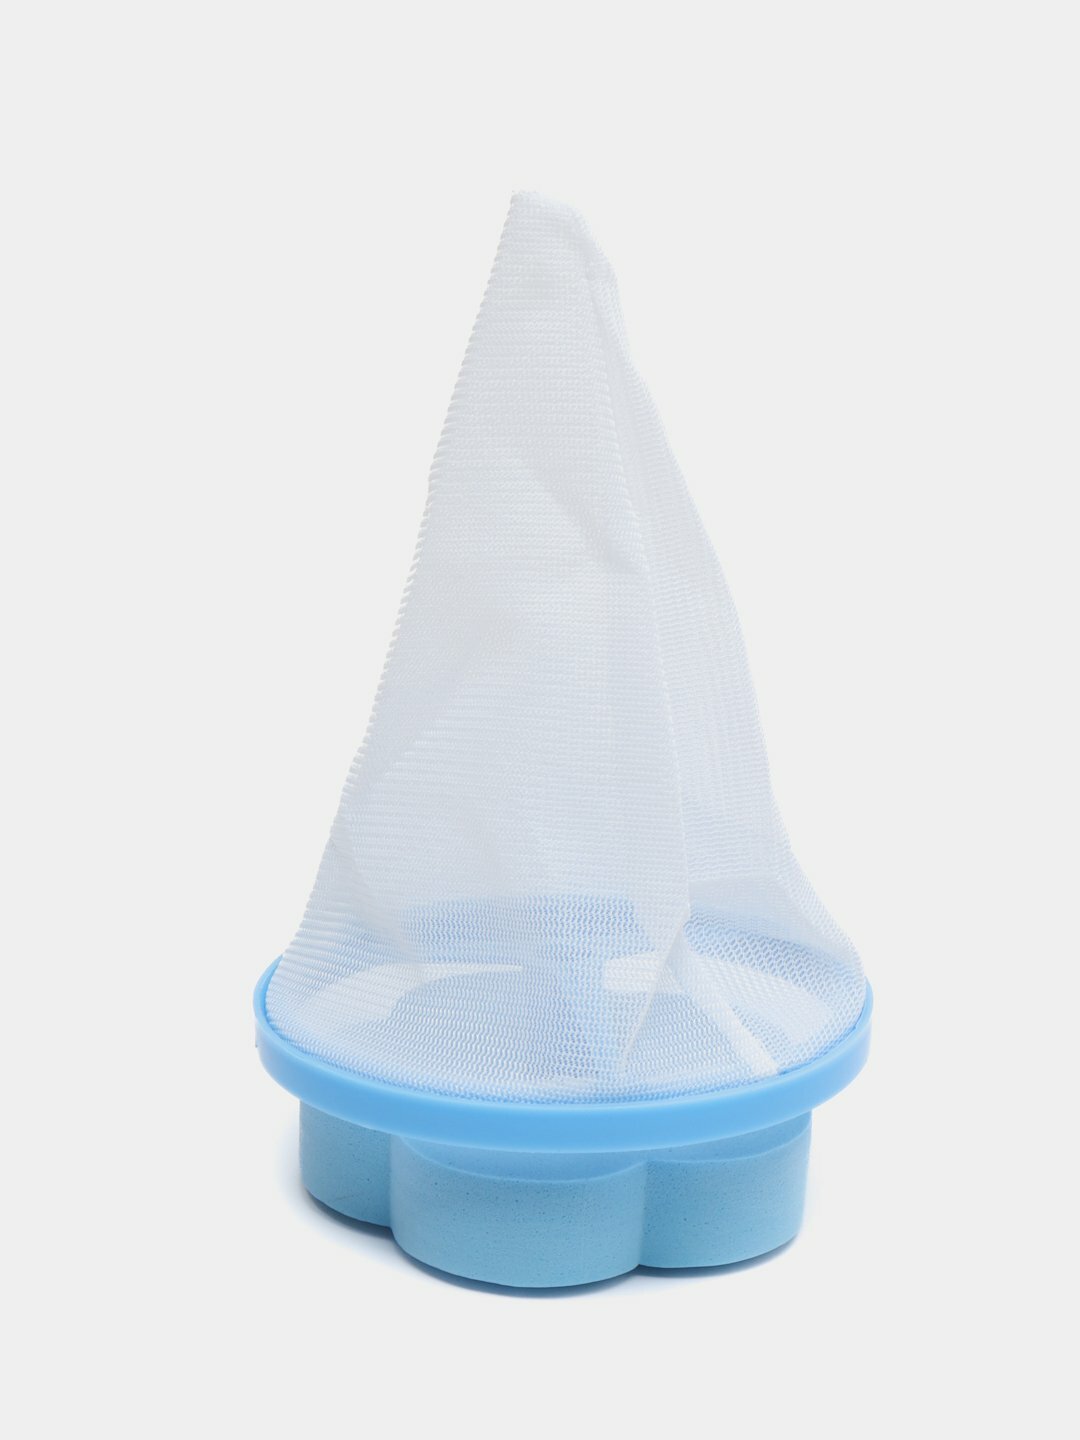 Фильтр мешок плавающая ловушка для волос и пыли Цвет Голубой